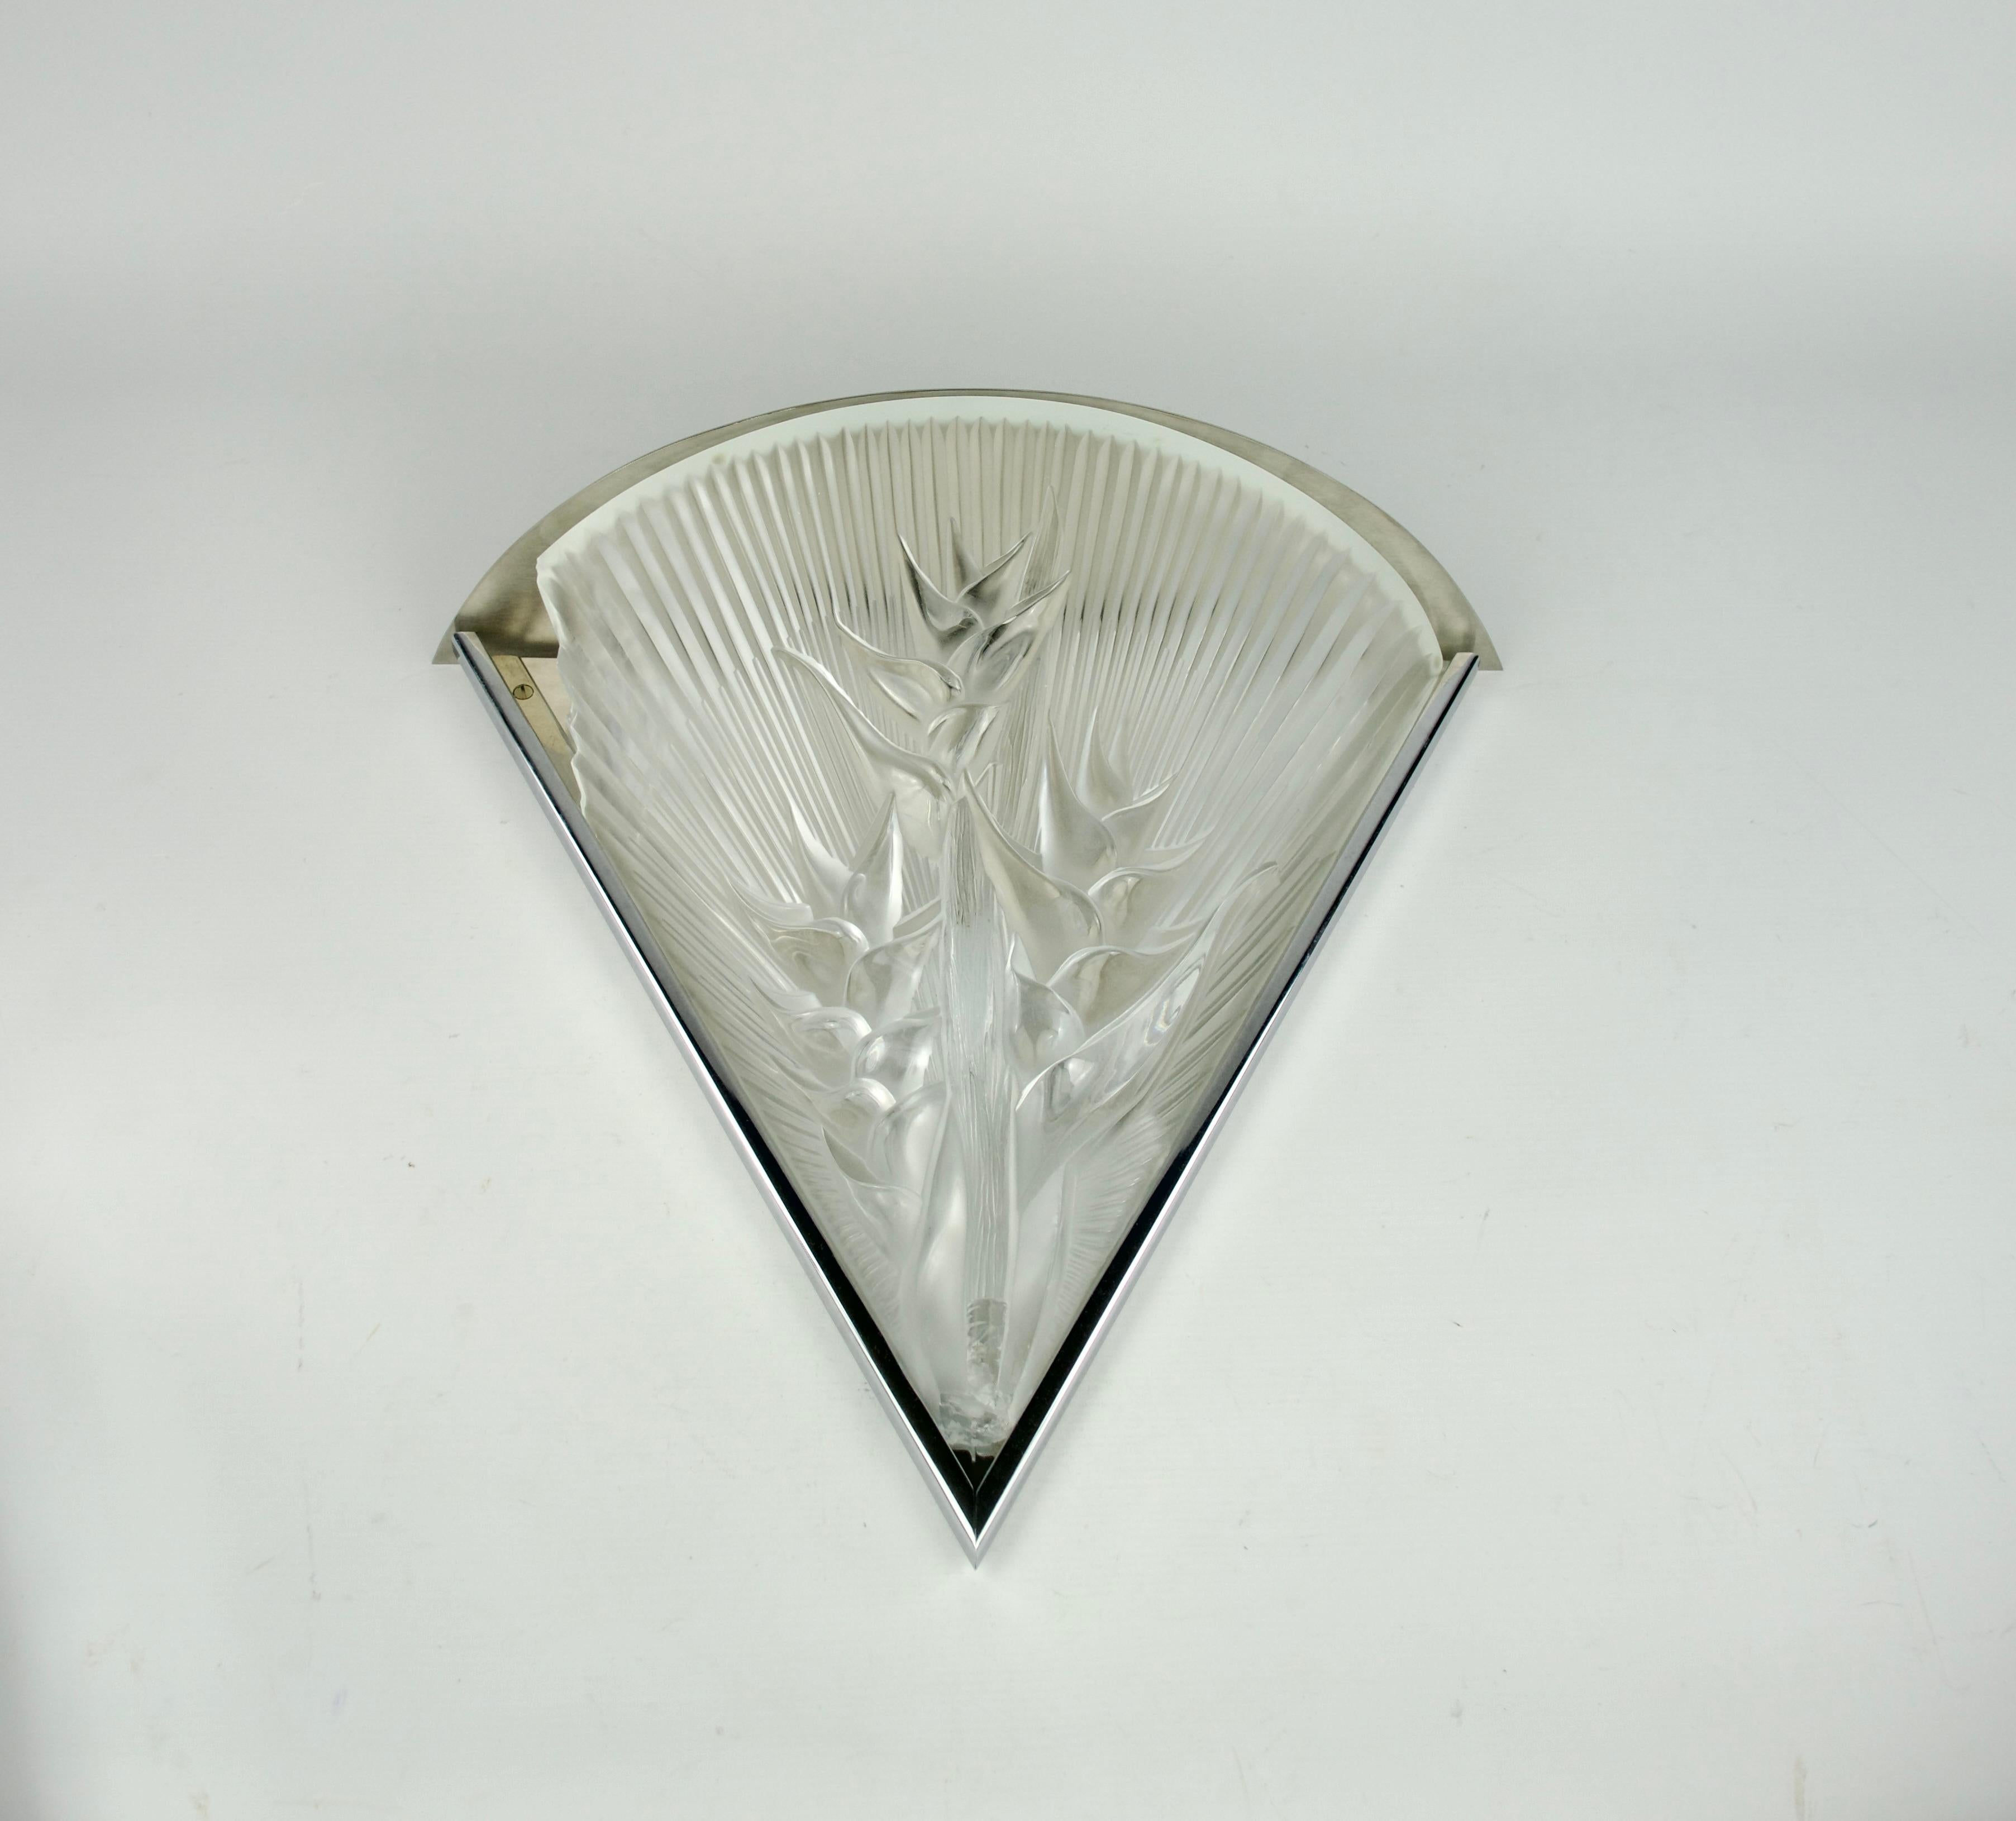 Magnifique applique Heliconia conçue par Marie-Claude pour la Maison Lalique.

En mauvais état, avec des éclats à tous les coins.

Dimensions en cm ( H x L x l ) : 42 x 44,5 x 15,5

Expédition sécurisée.